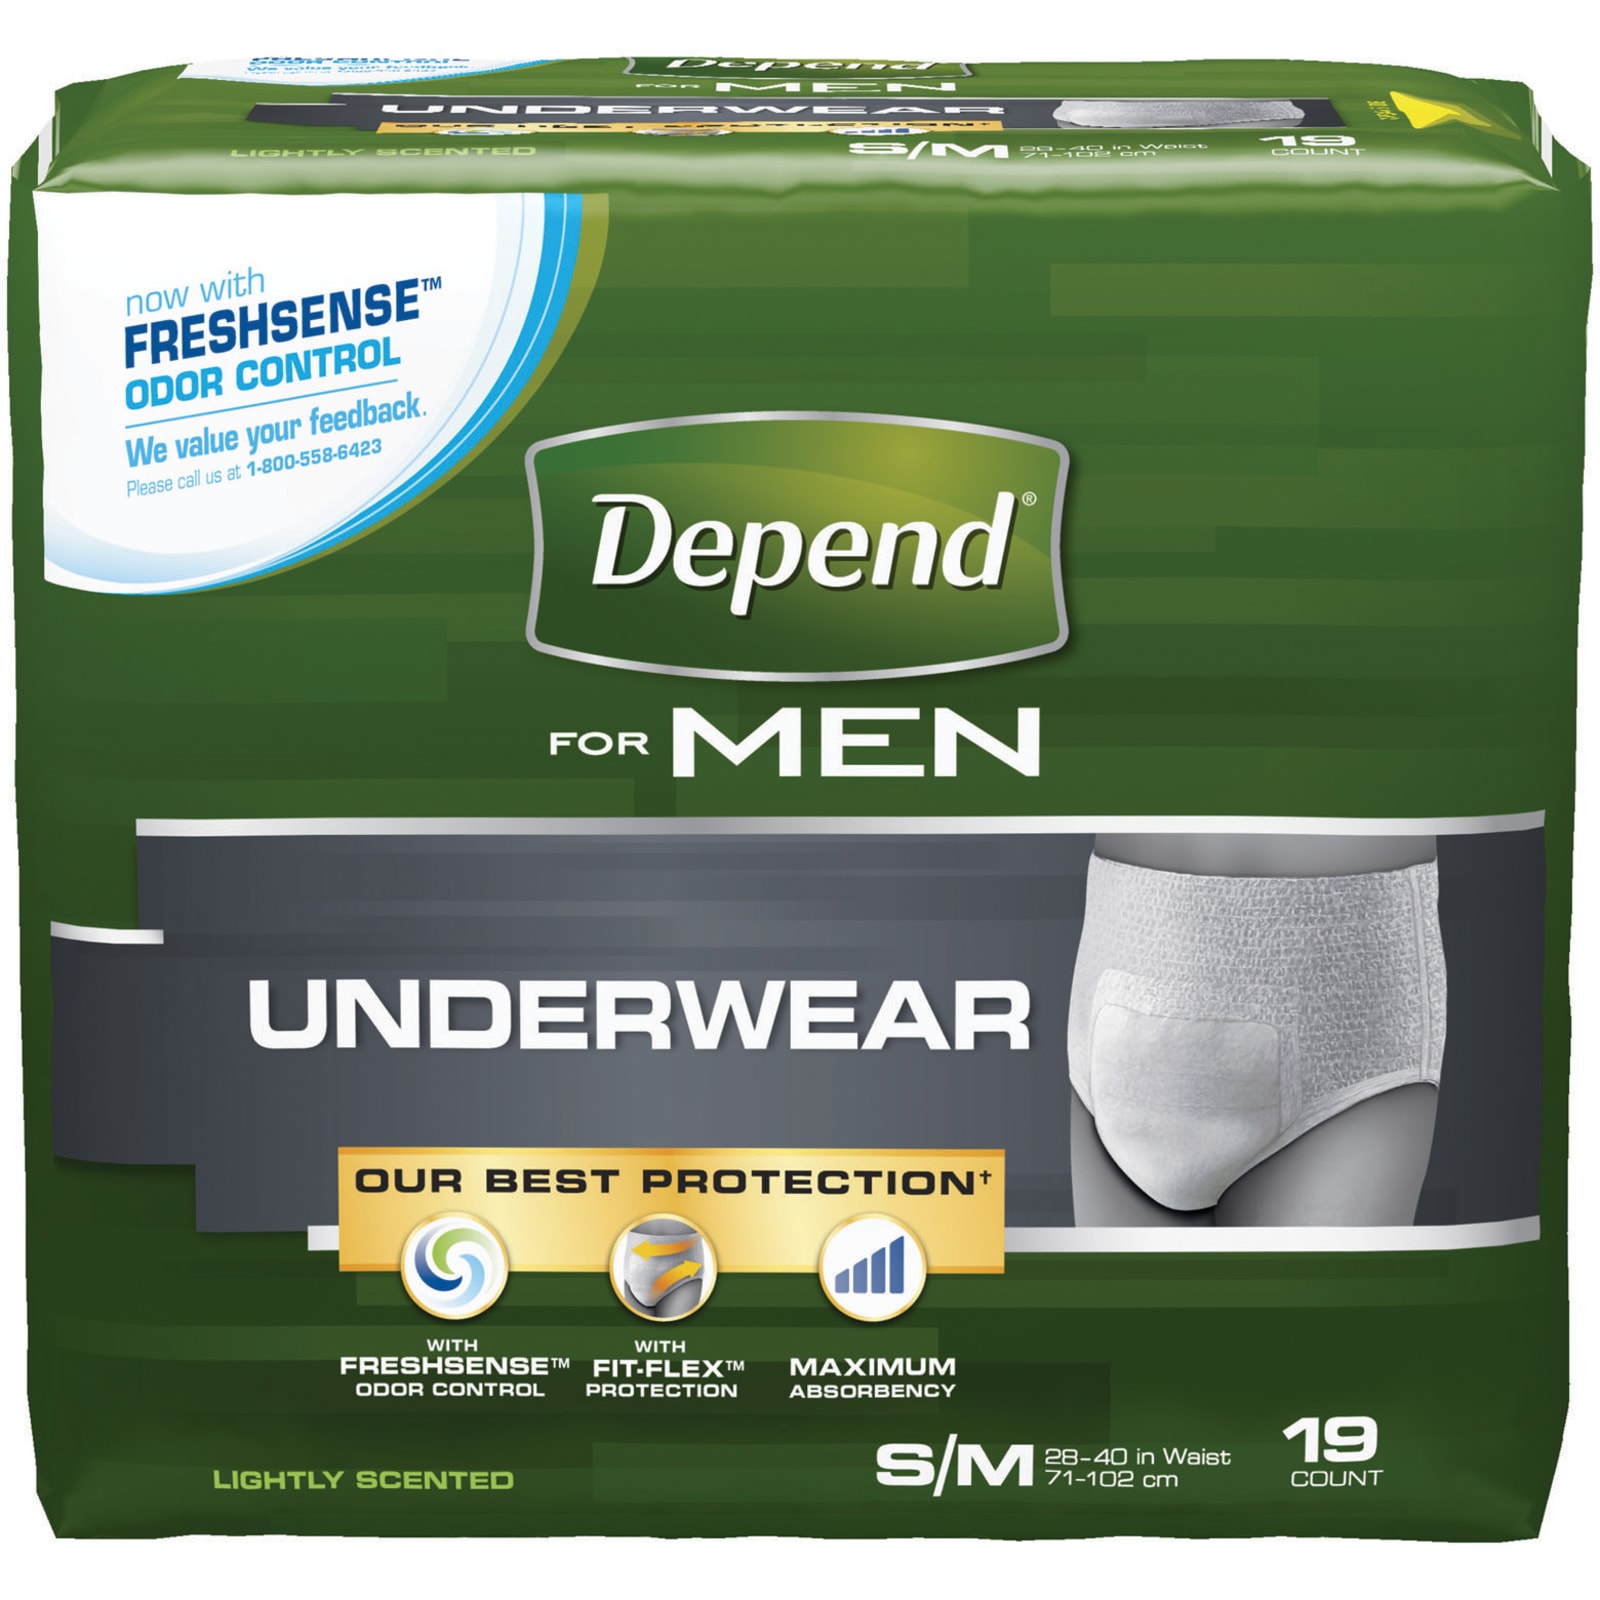 Boxer Brief - Snow Worries  Step One Men's Underwear US